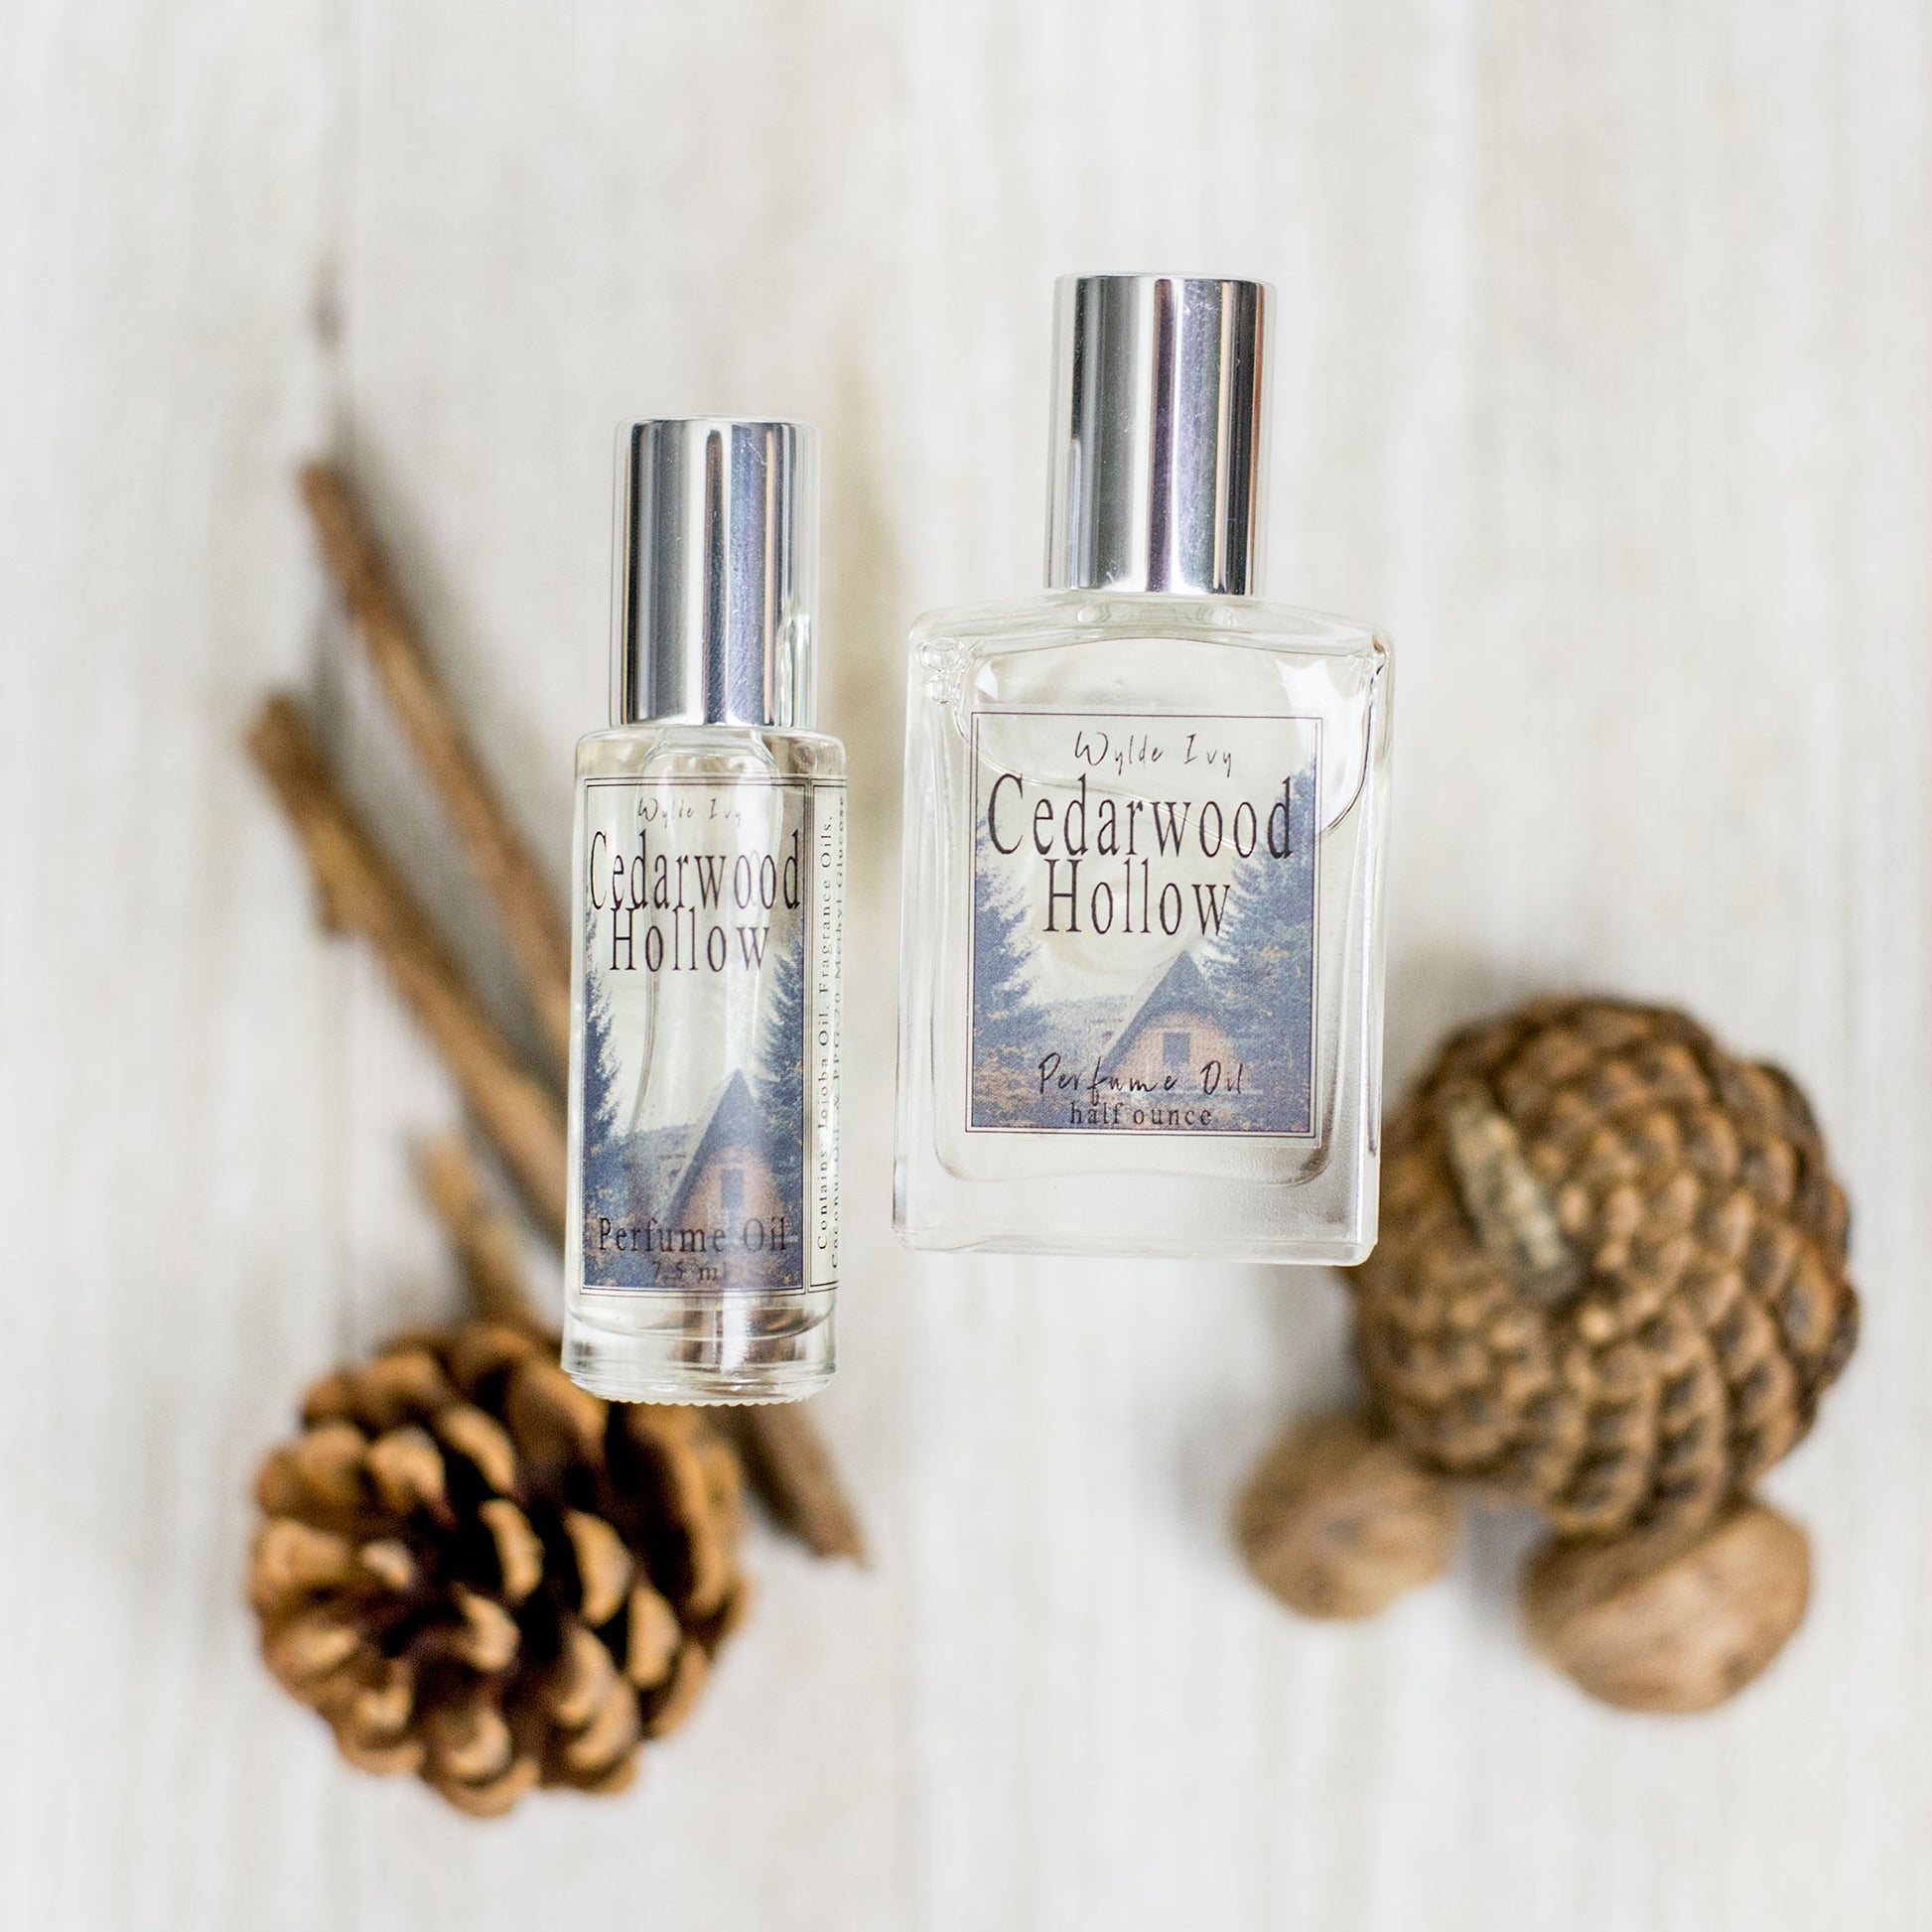 Hello September Perfume Oils – Wylde Ivy